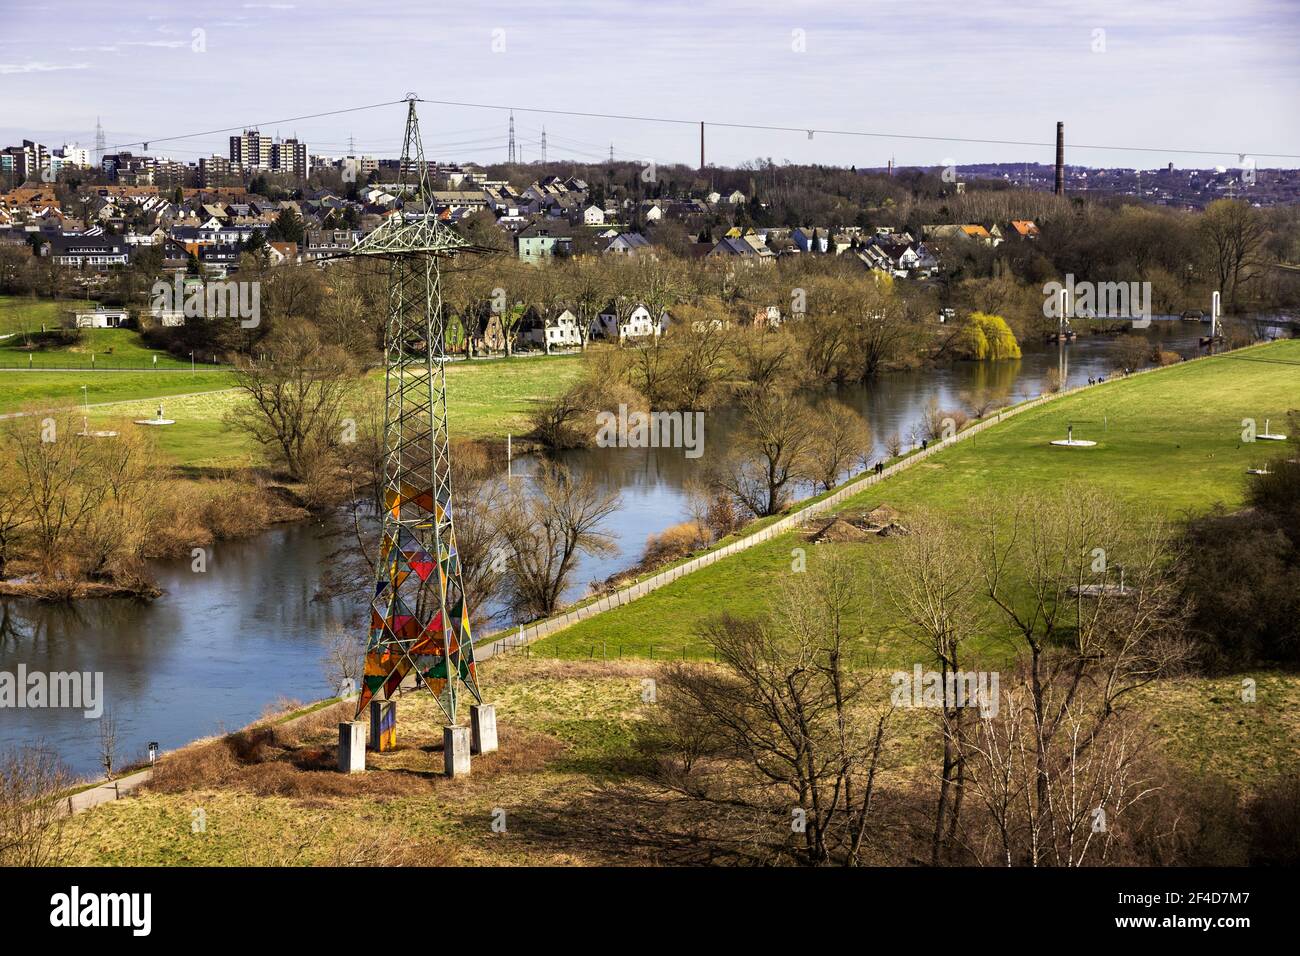 Leuchtturm, faro, pilone elettrico con colorati pannelli in plexiglass sulle rive del fiume Ruhr, Essen-Horst alle spalle, Essen, Germania Foto Stock